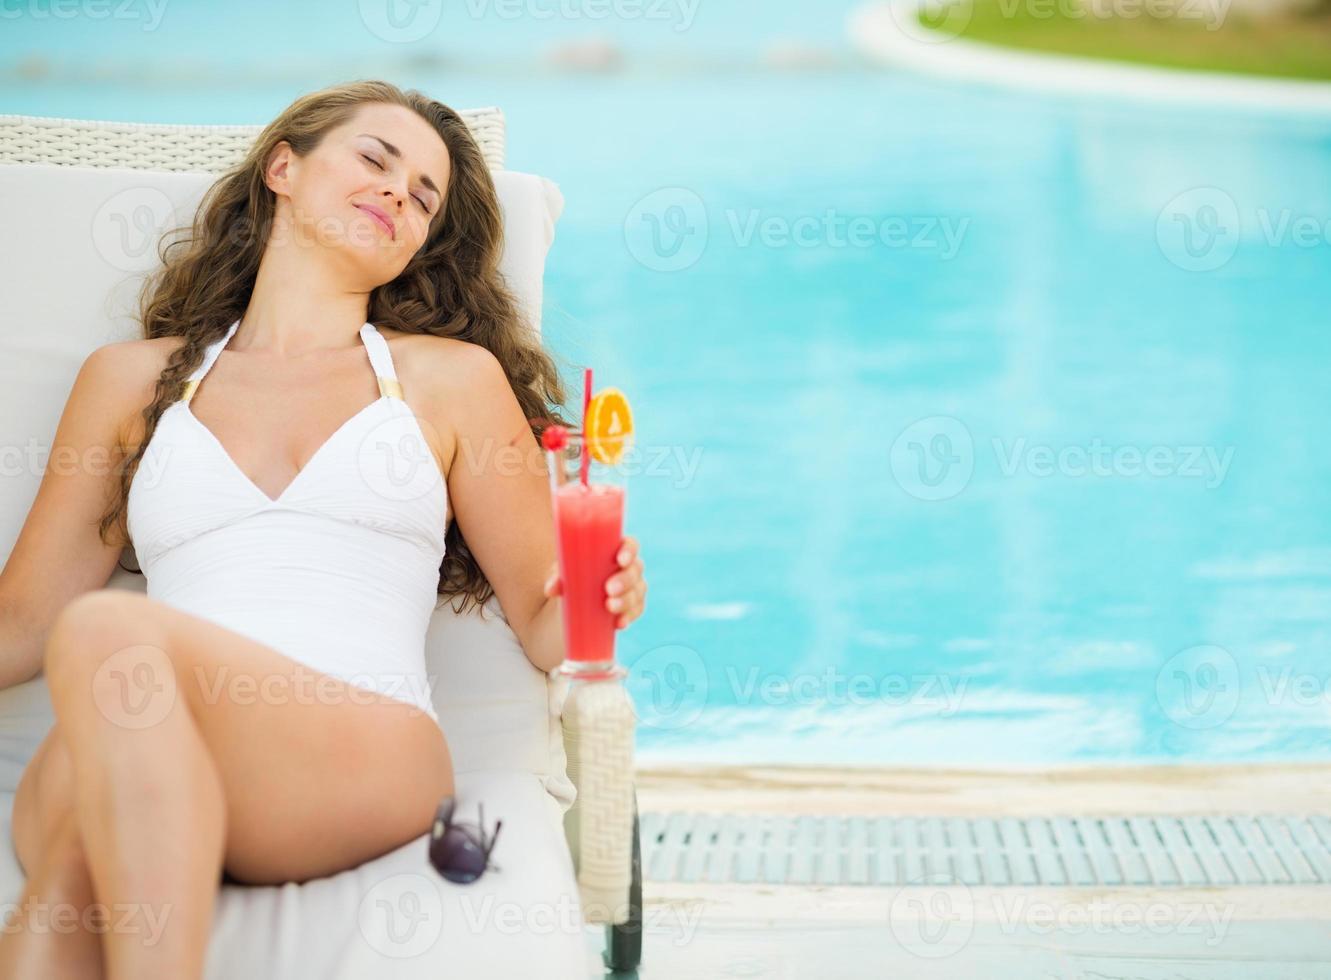 gelukkige jonge vrouw met cocktail genieten die op chaise-longue legt foto